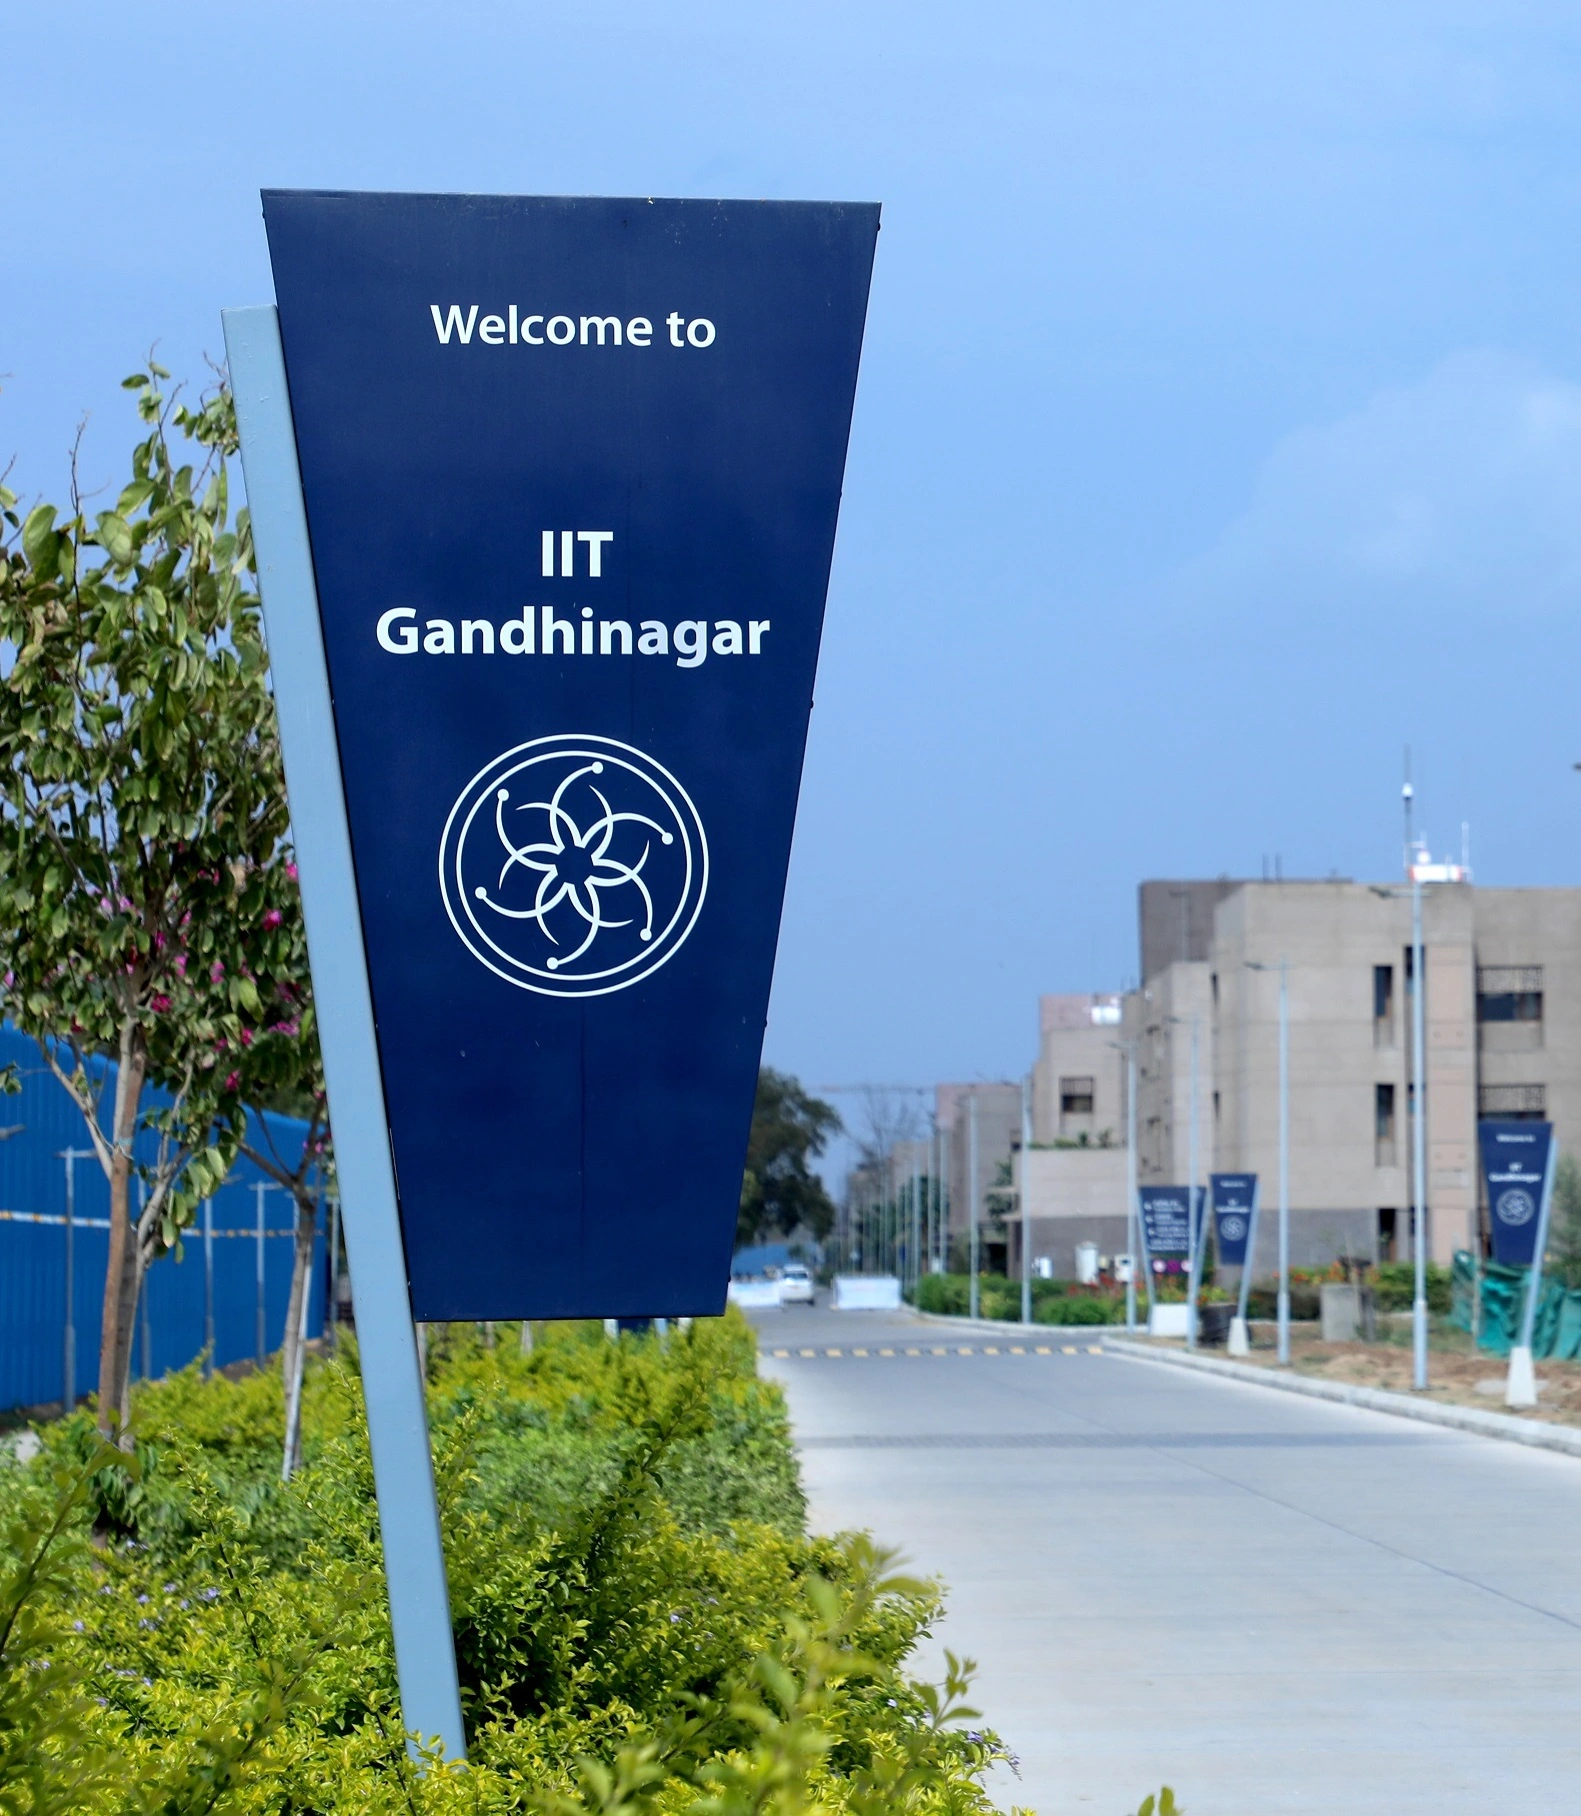 IIT Gandhinagar - Groundwork